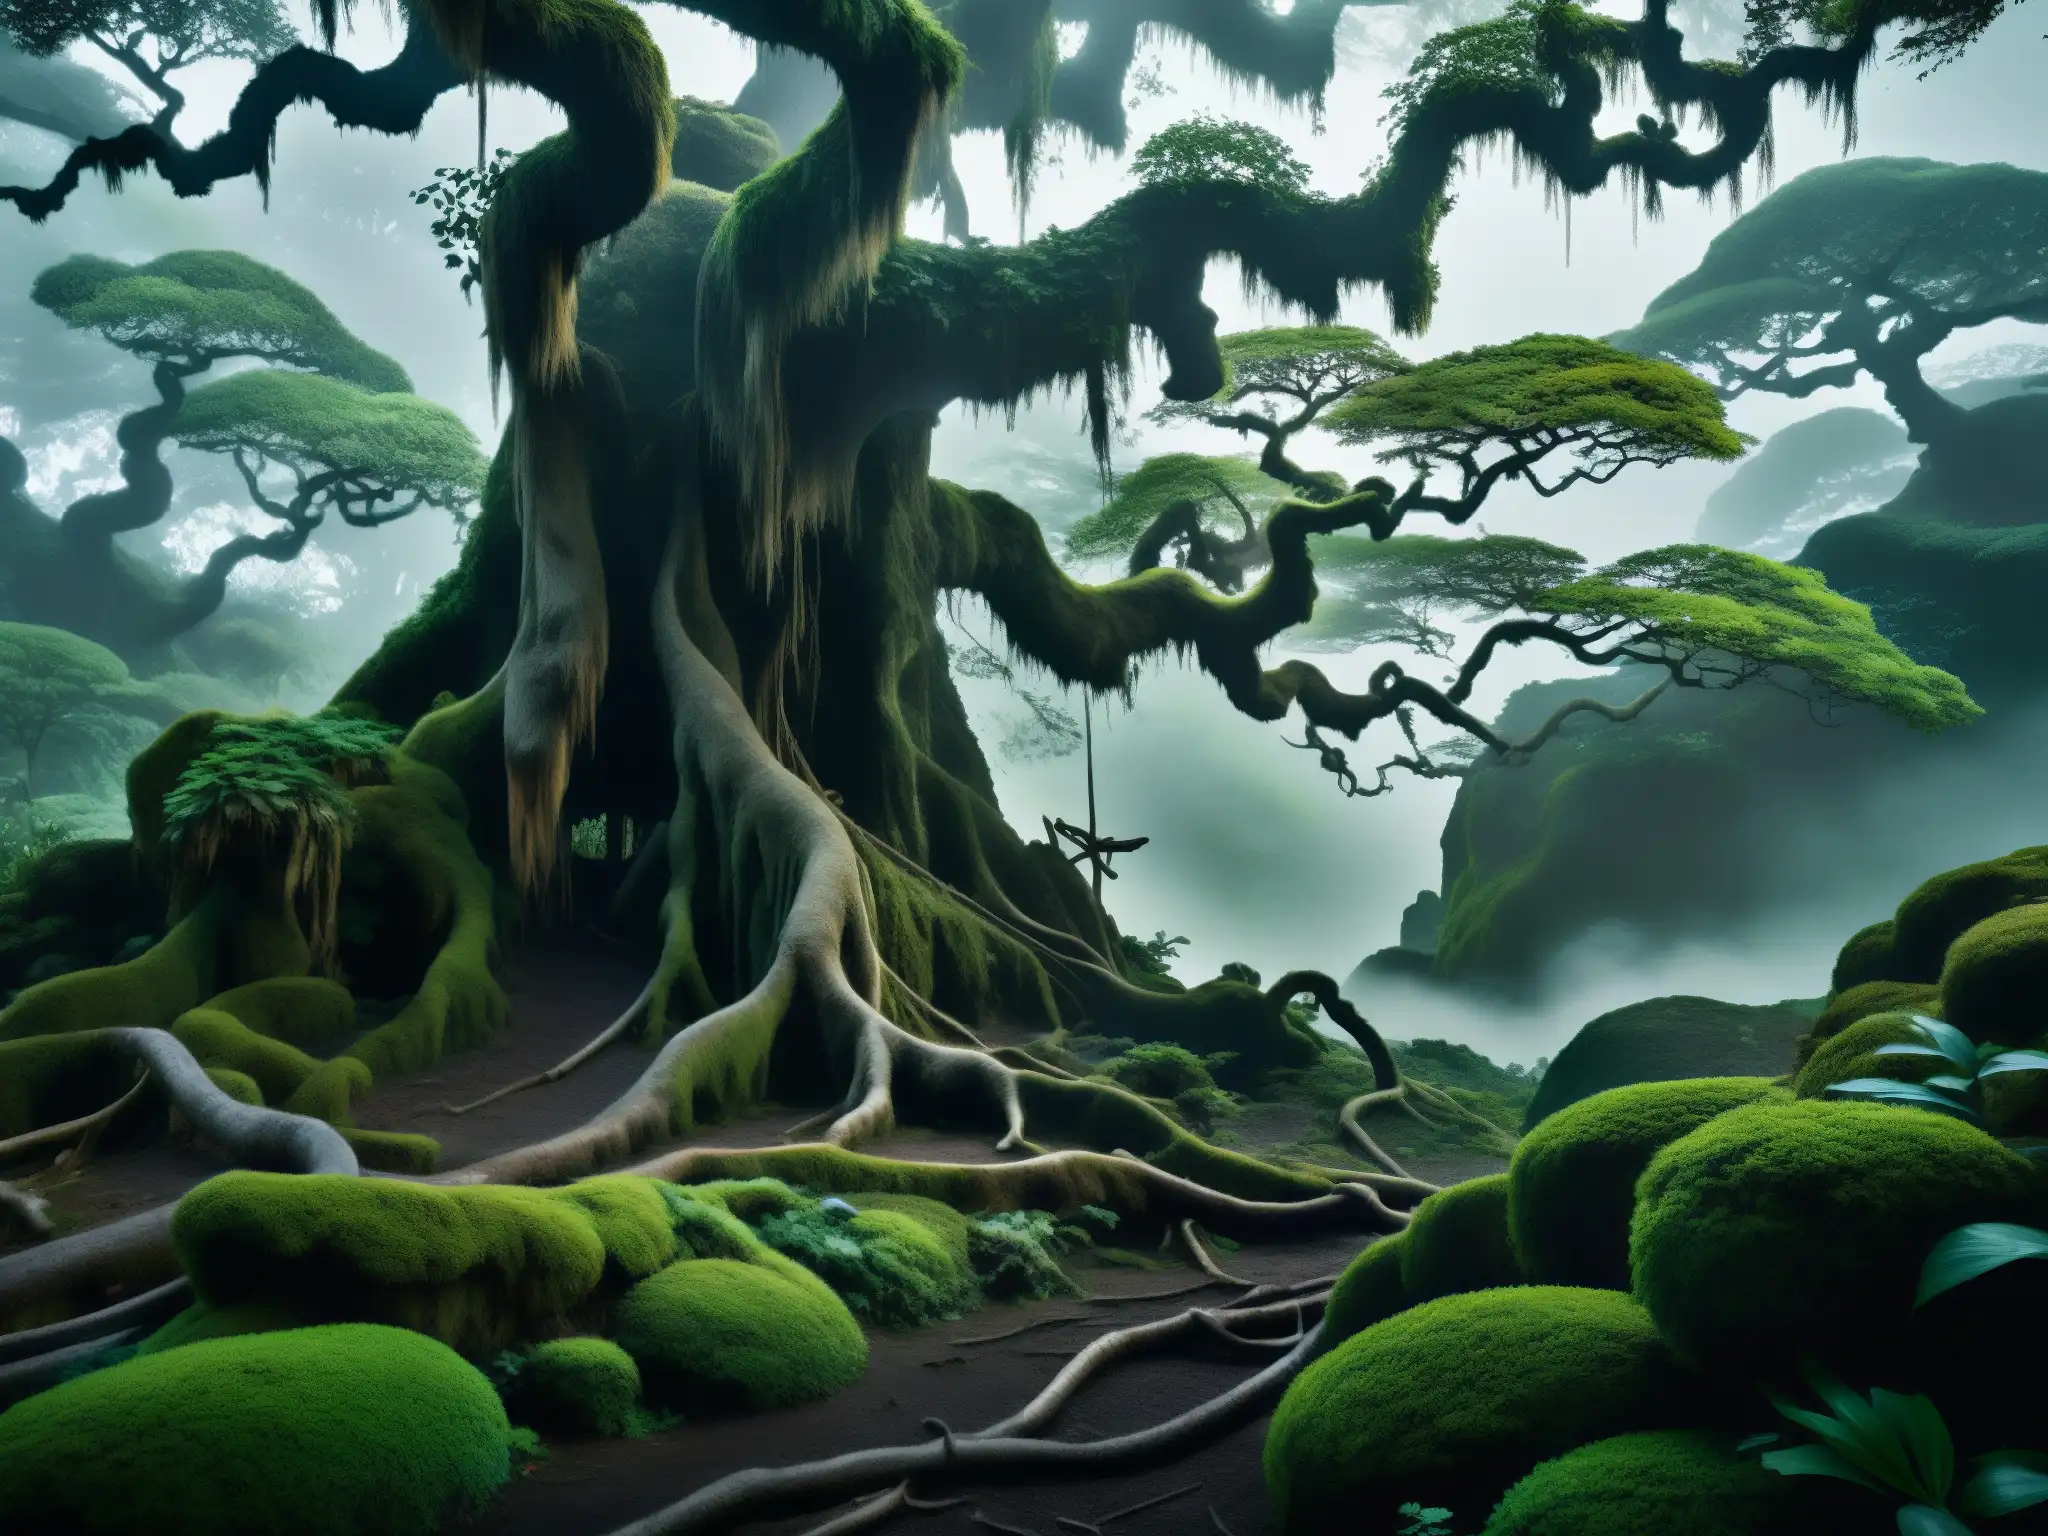 Imagen 8k de un bosque japonés antiguo y neblinoso con árboles retorcidos y enredaderas, creando una atmósfera misteriosa